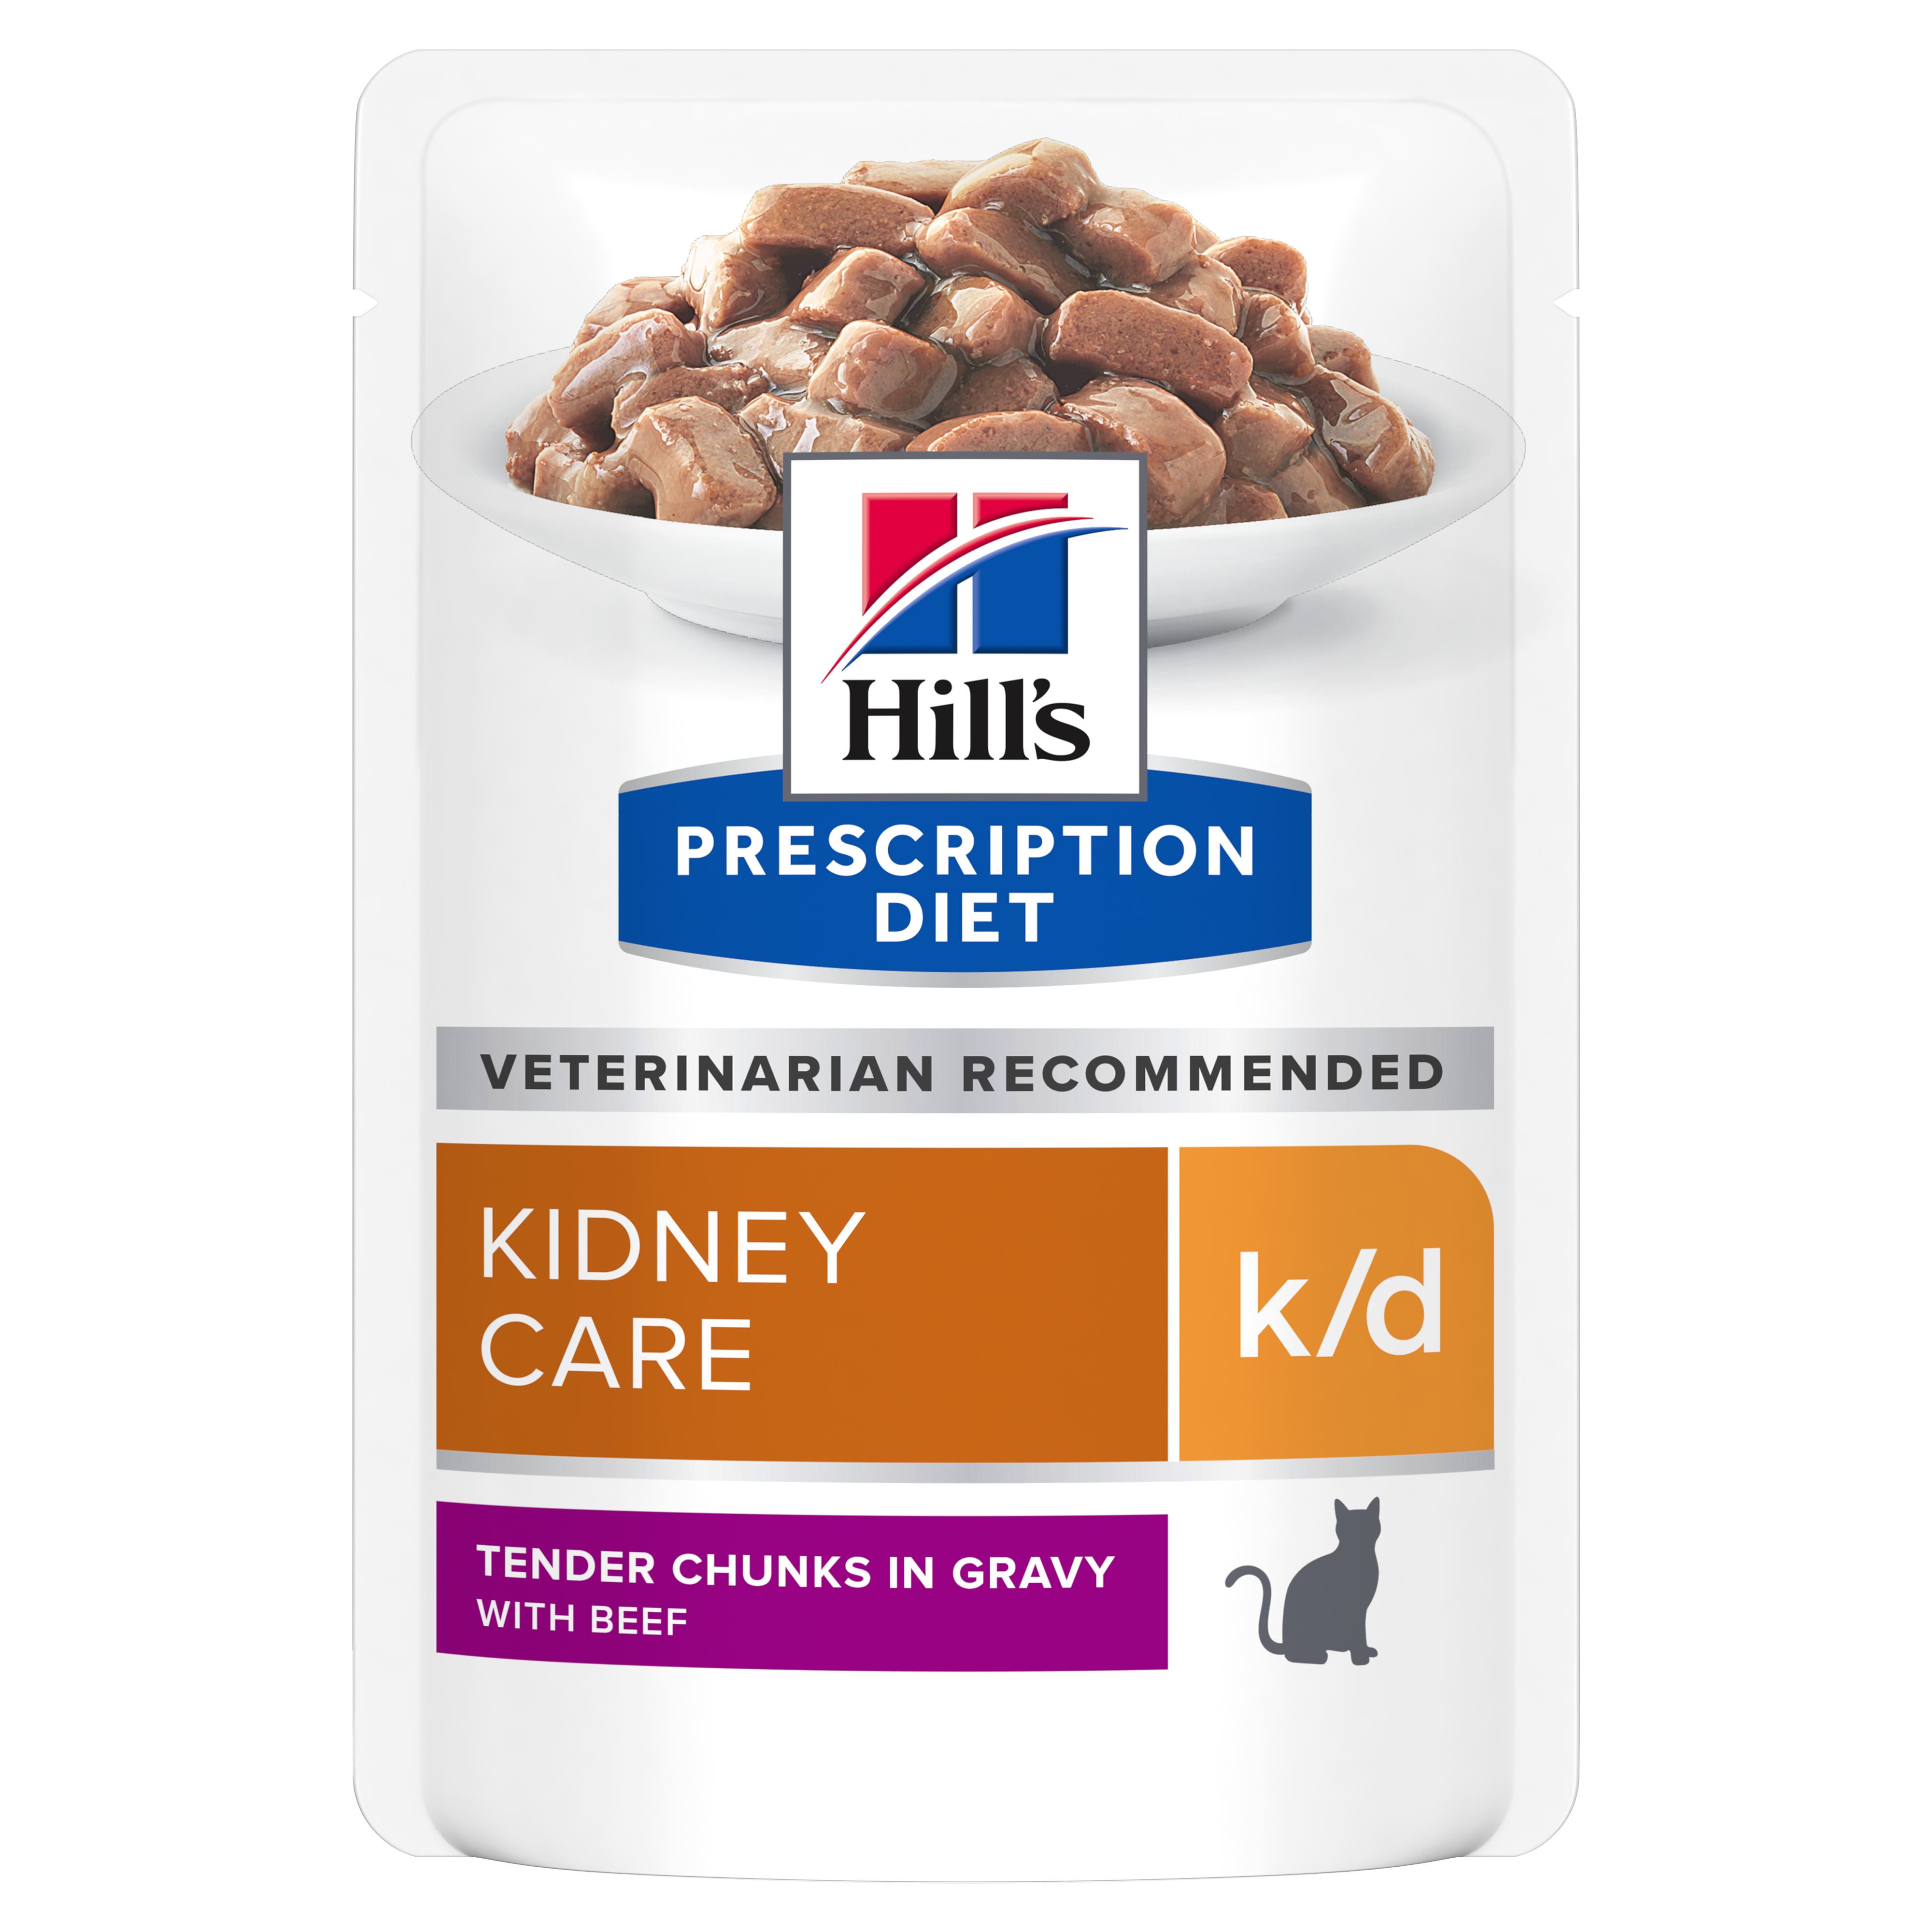 Hill's Prescription Diet Cat Pouch k/d Beef